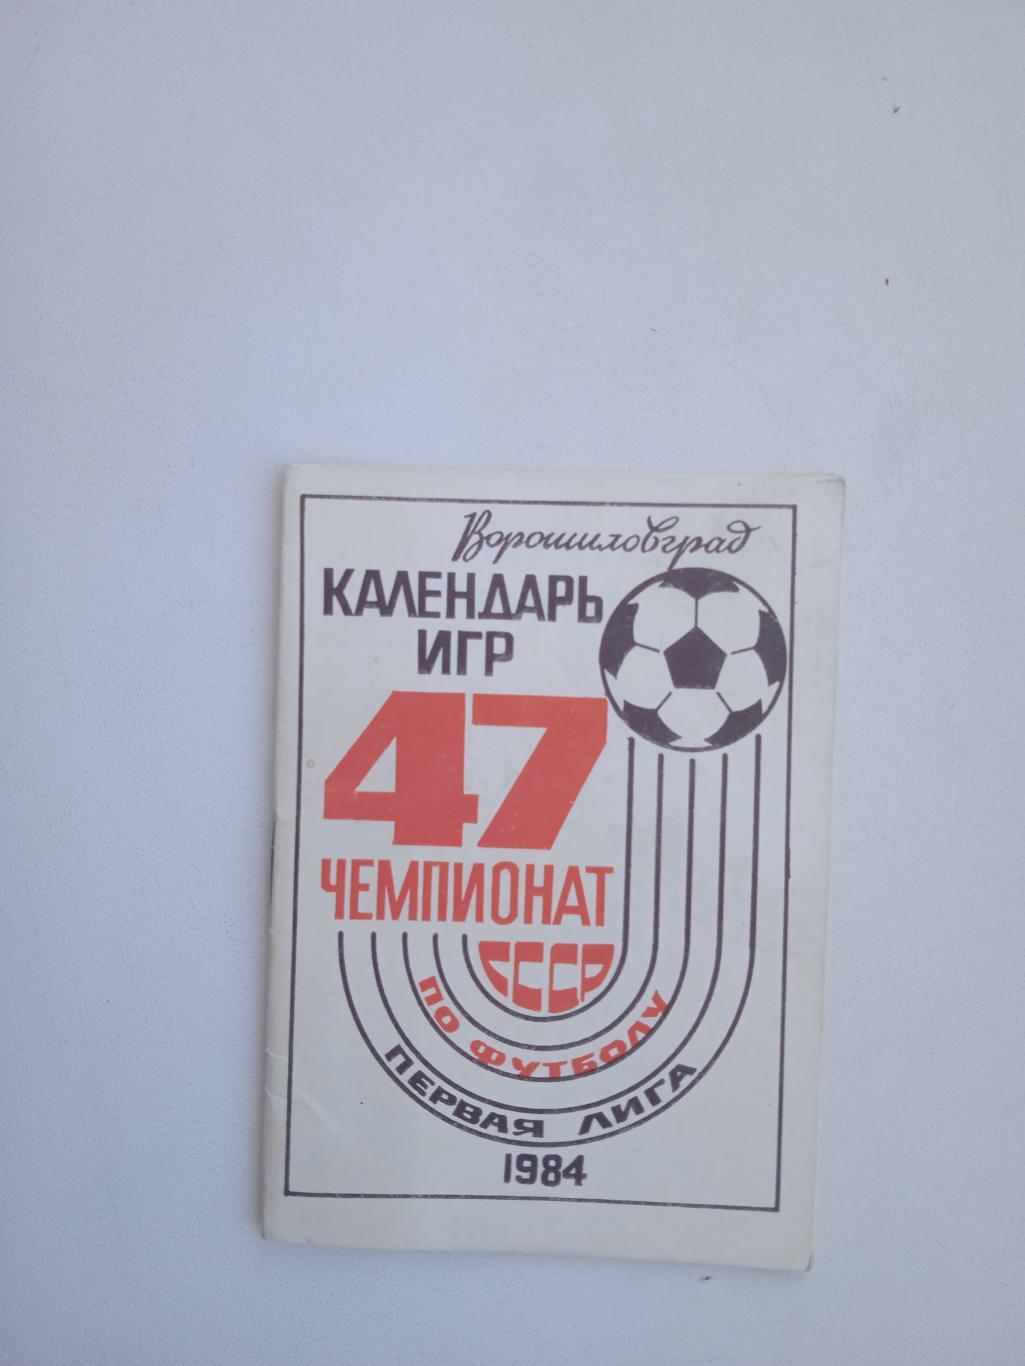 1984 Заря Ворошиловград Календарь игр